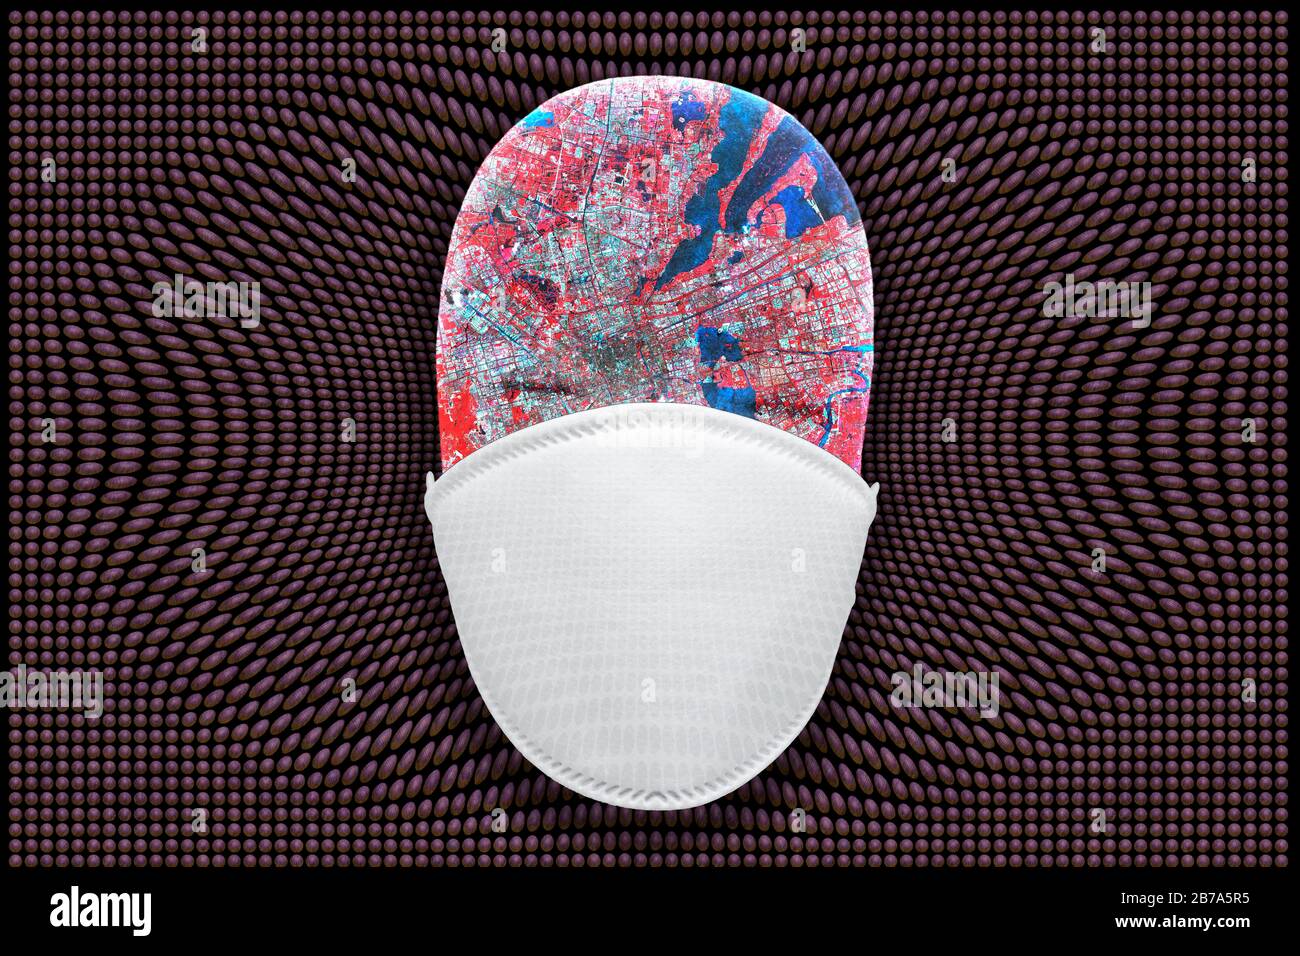 masque de santé avec droplet de virus montrant la pandémie mondiale. Carte avec courtoisie NASA/JPL-Caltech. Banque D'Images